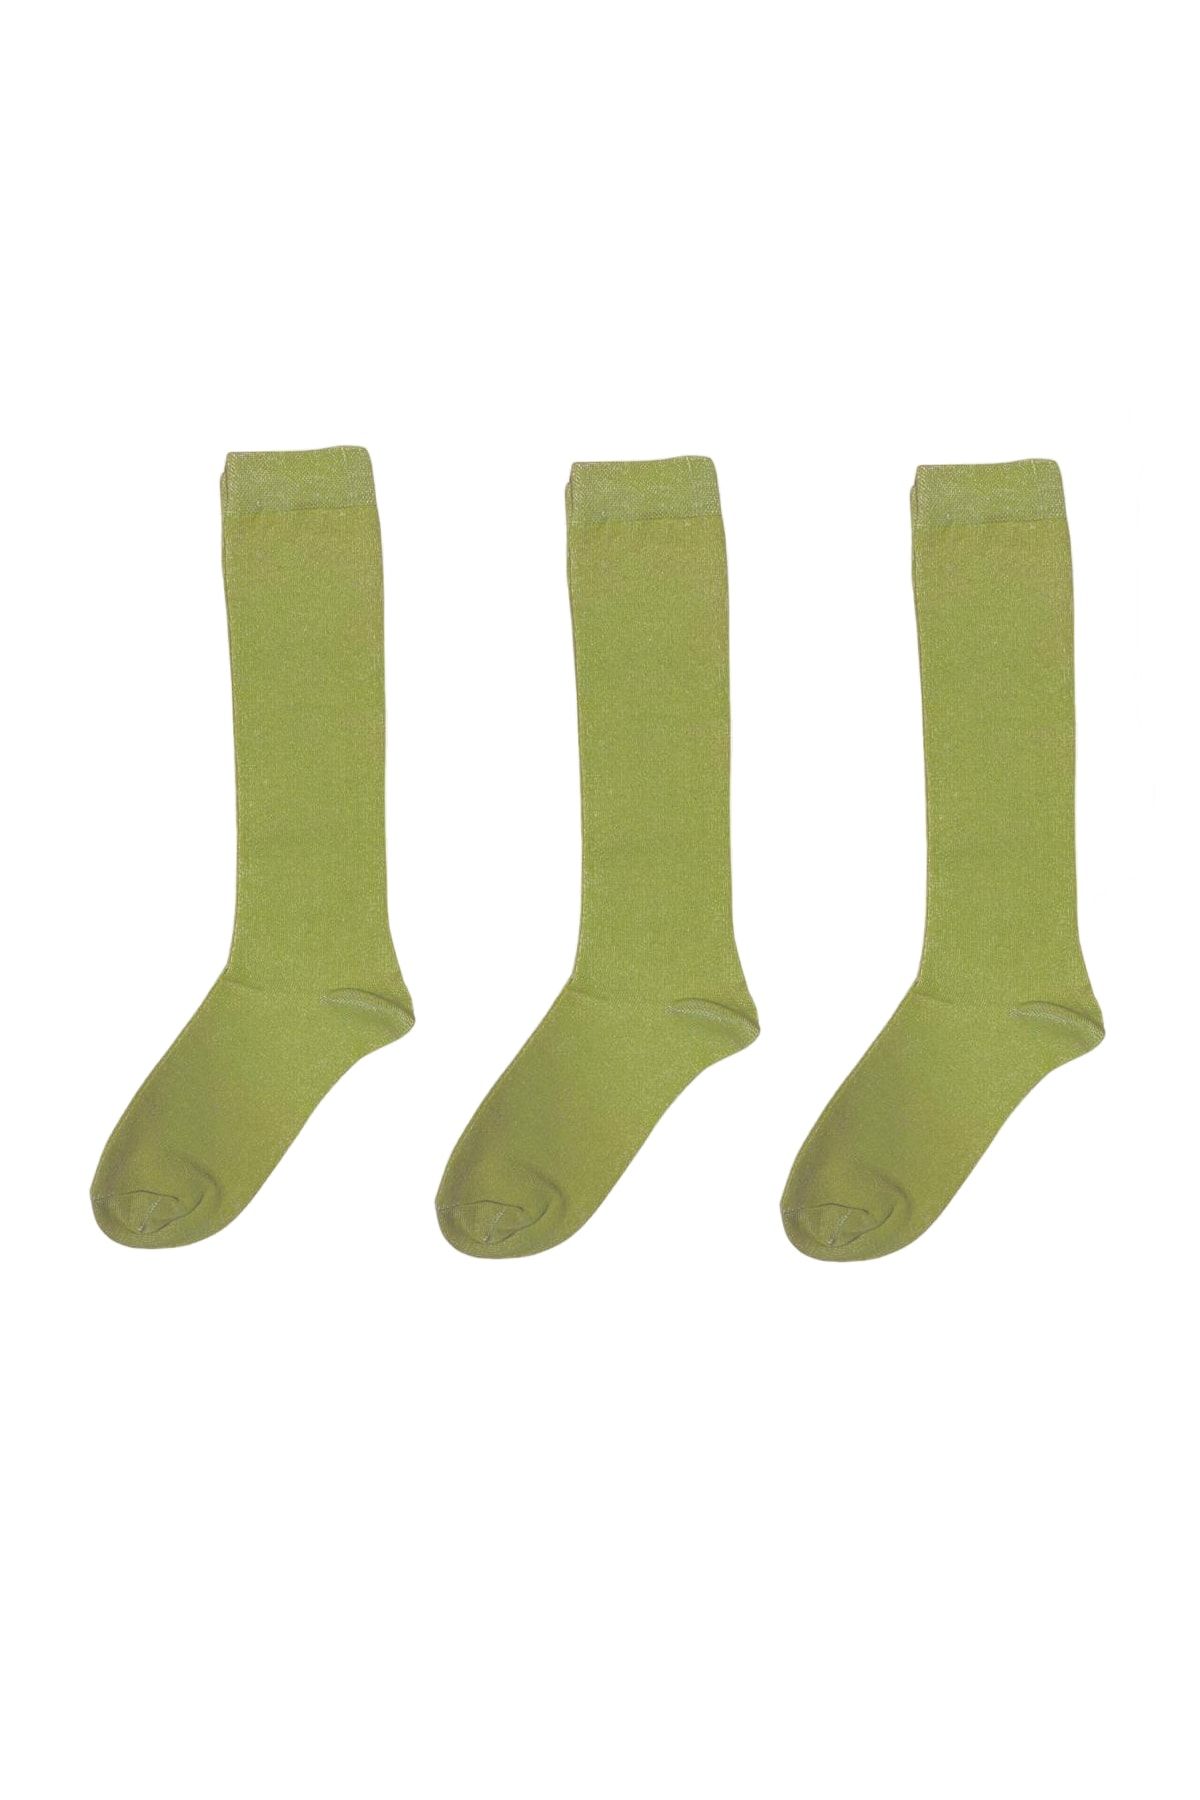 Silyon Askeri Giyim Asker Çorabı 3'lü